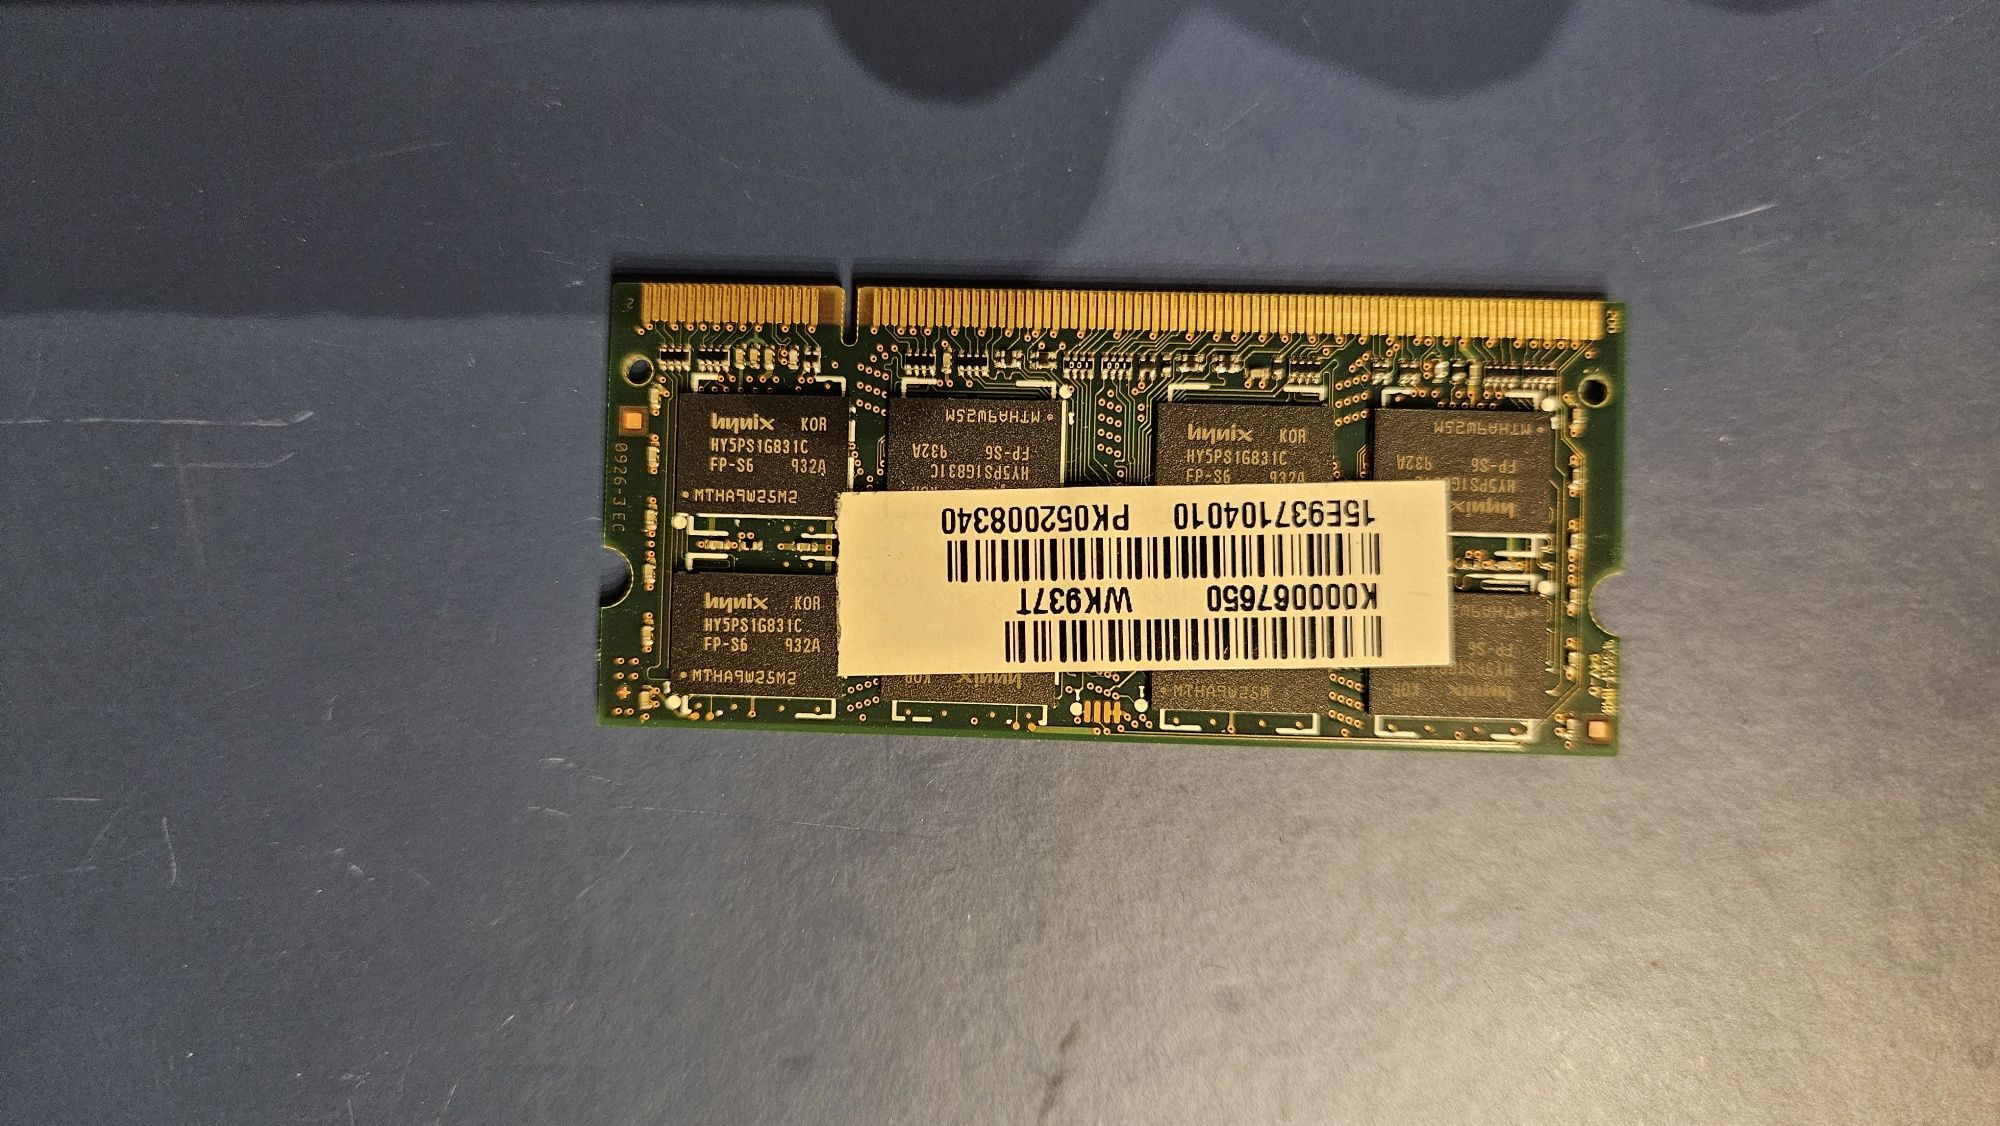 HYNIX 2GB DDR2 6400MHZ SO-DIMM